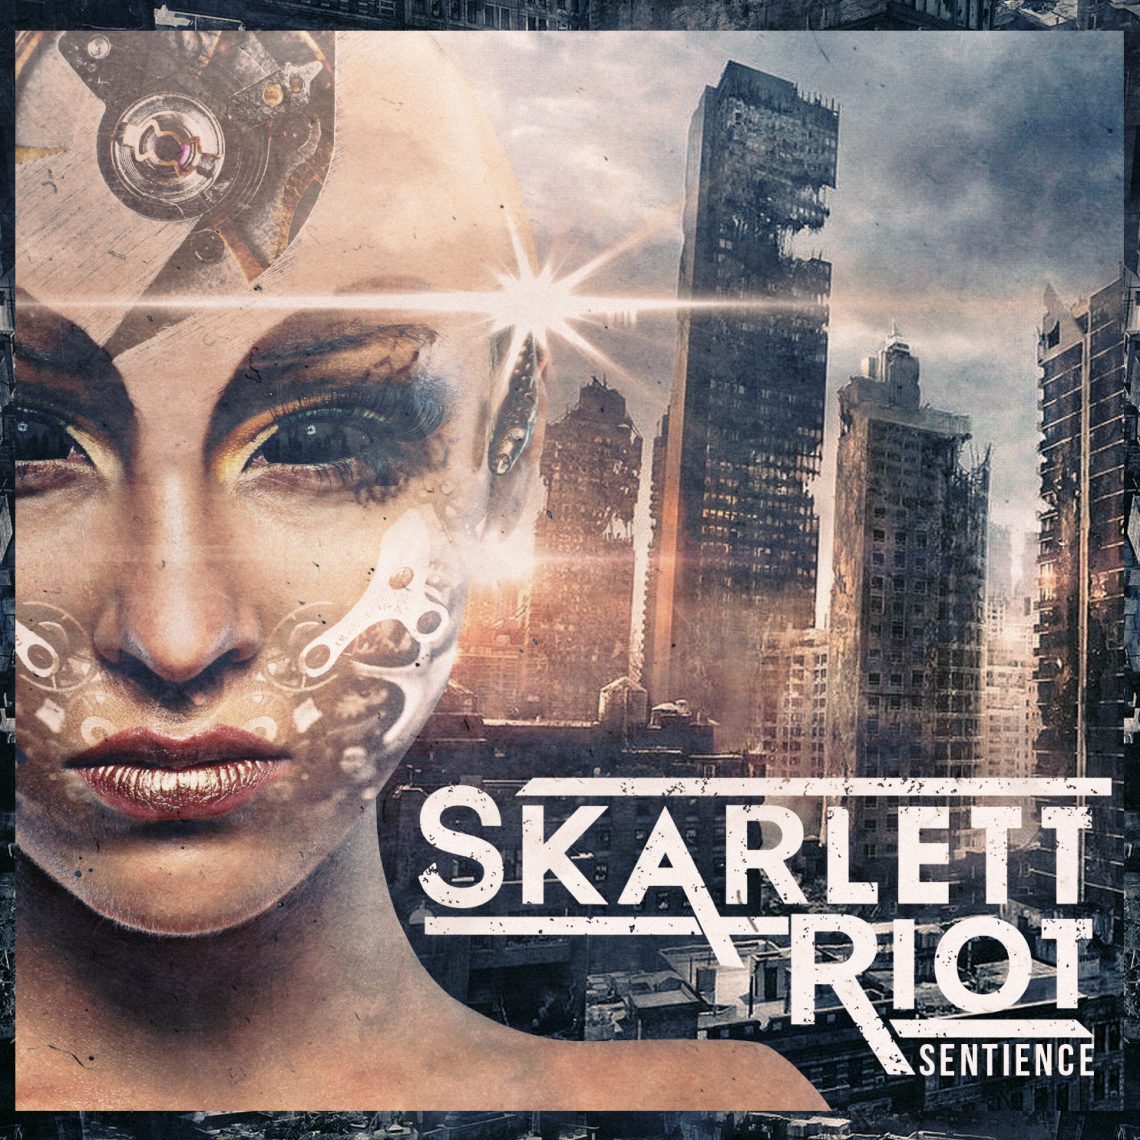 Skarlett Riot – Sentience – CD Review